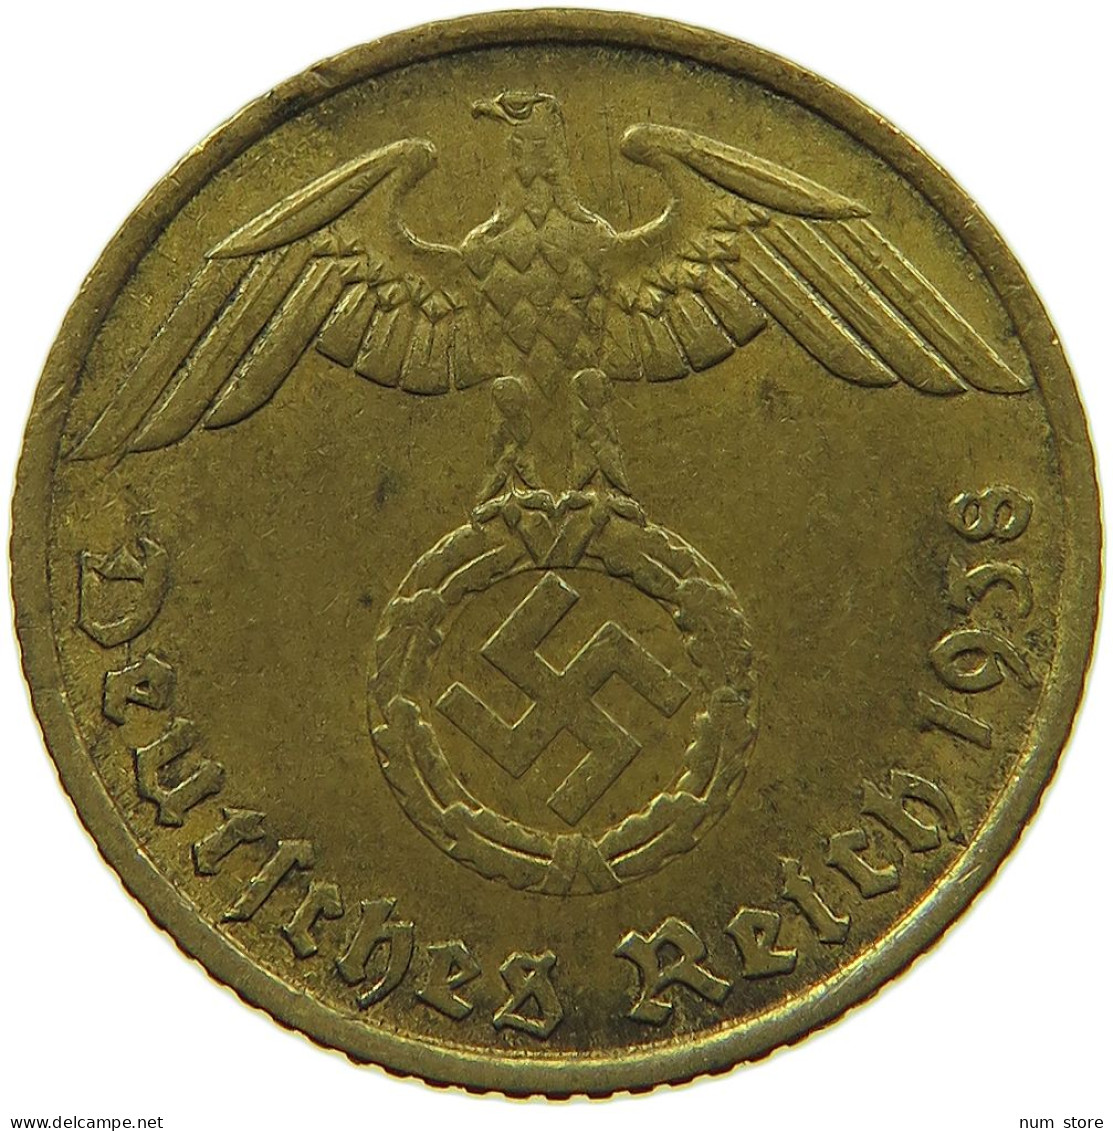 GERMANY 5 REICHSPFENNIG 1938 A #s091 0785 - 5 Reichspfennig